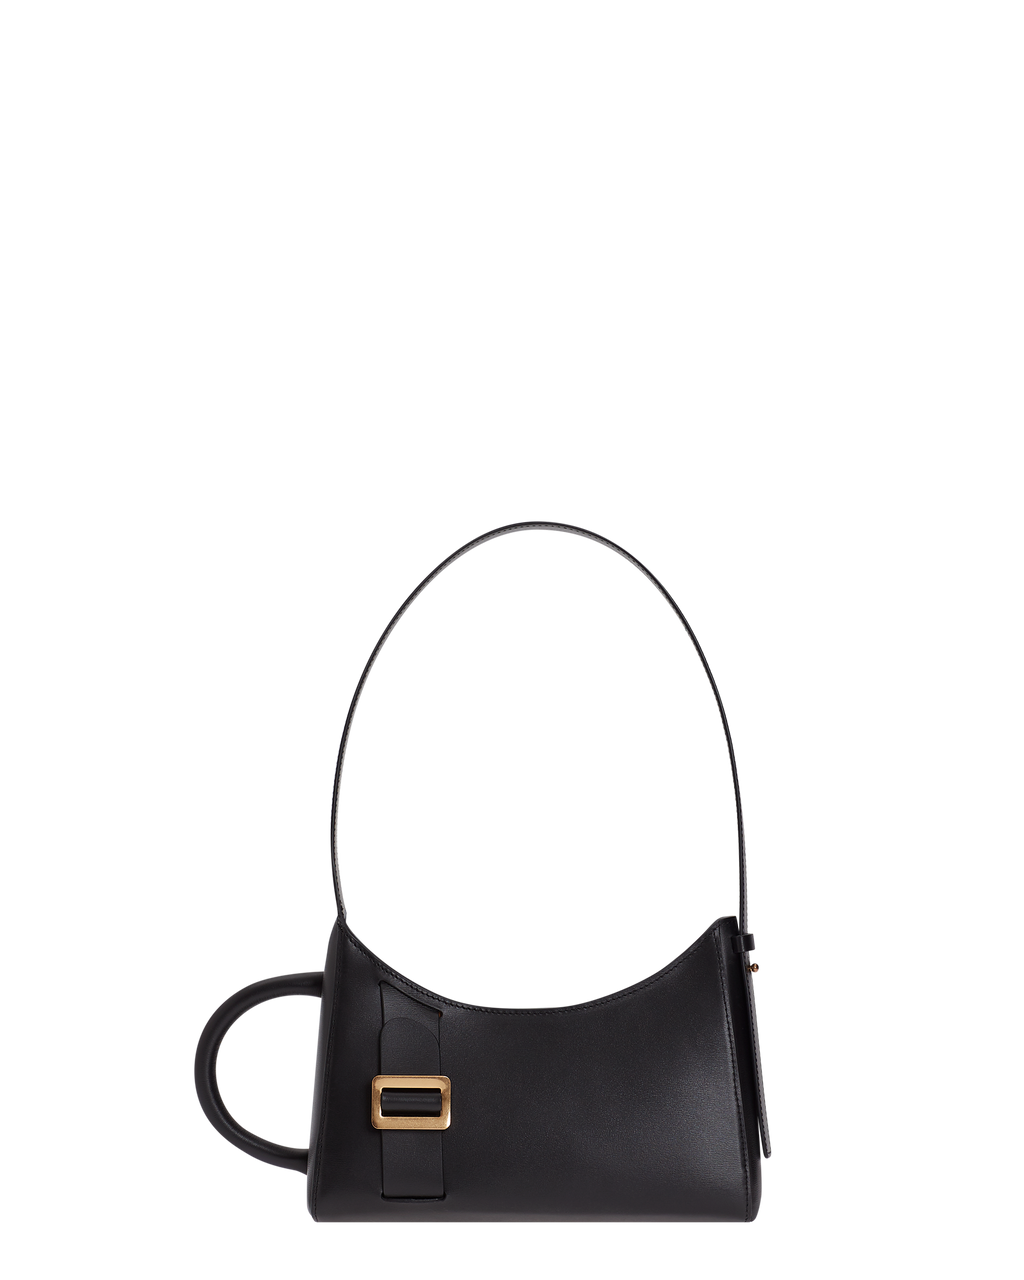 Basic Bag in Matt Black Leather 